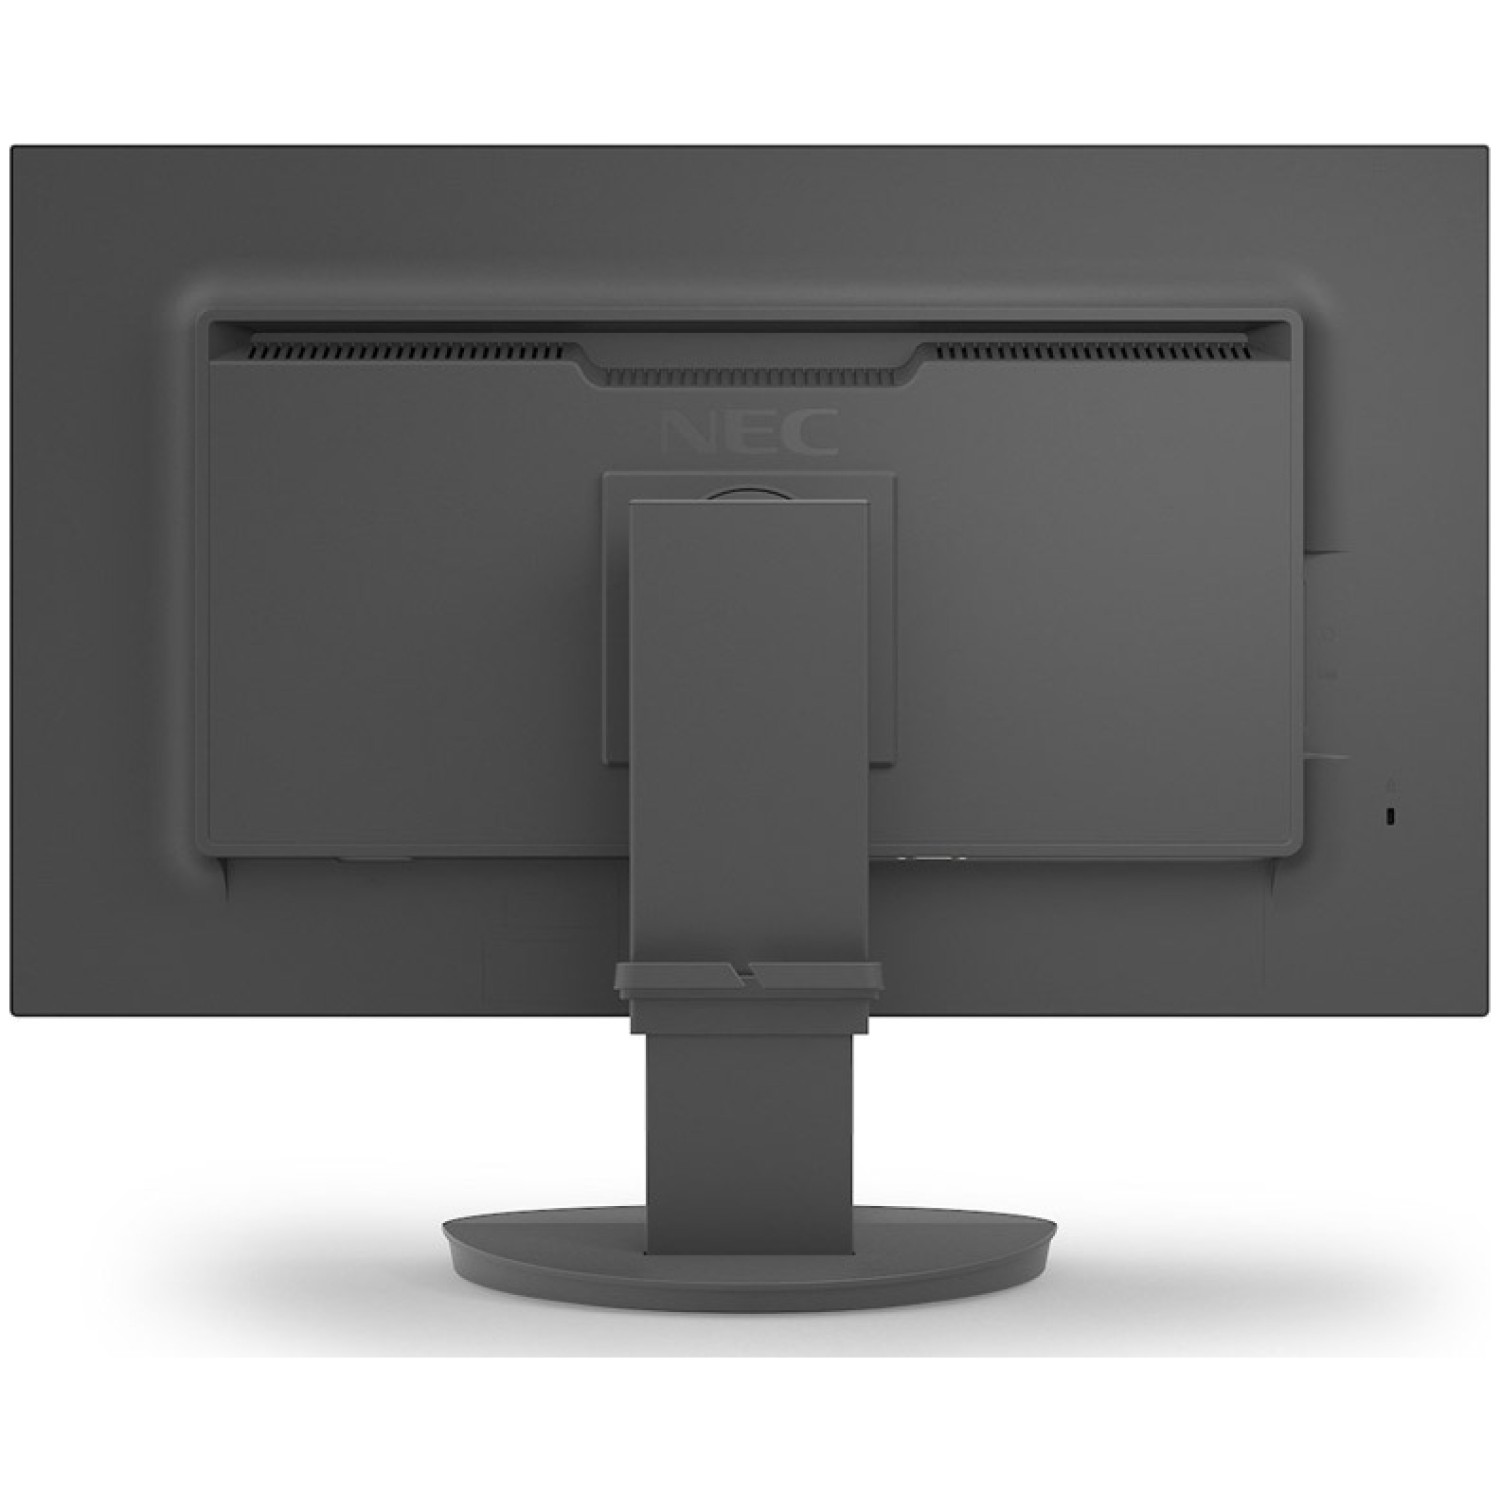 47cm (24") FHD IPS LED LCD zvočniki monitor